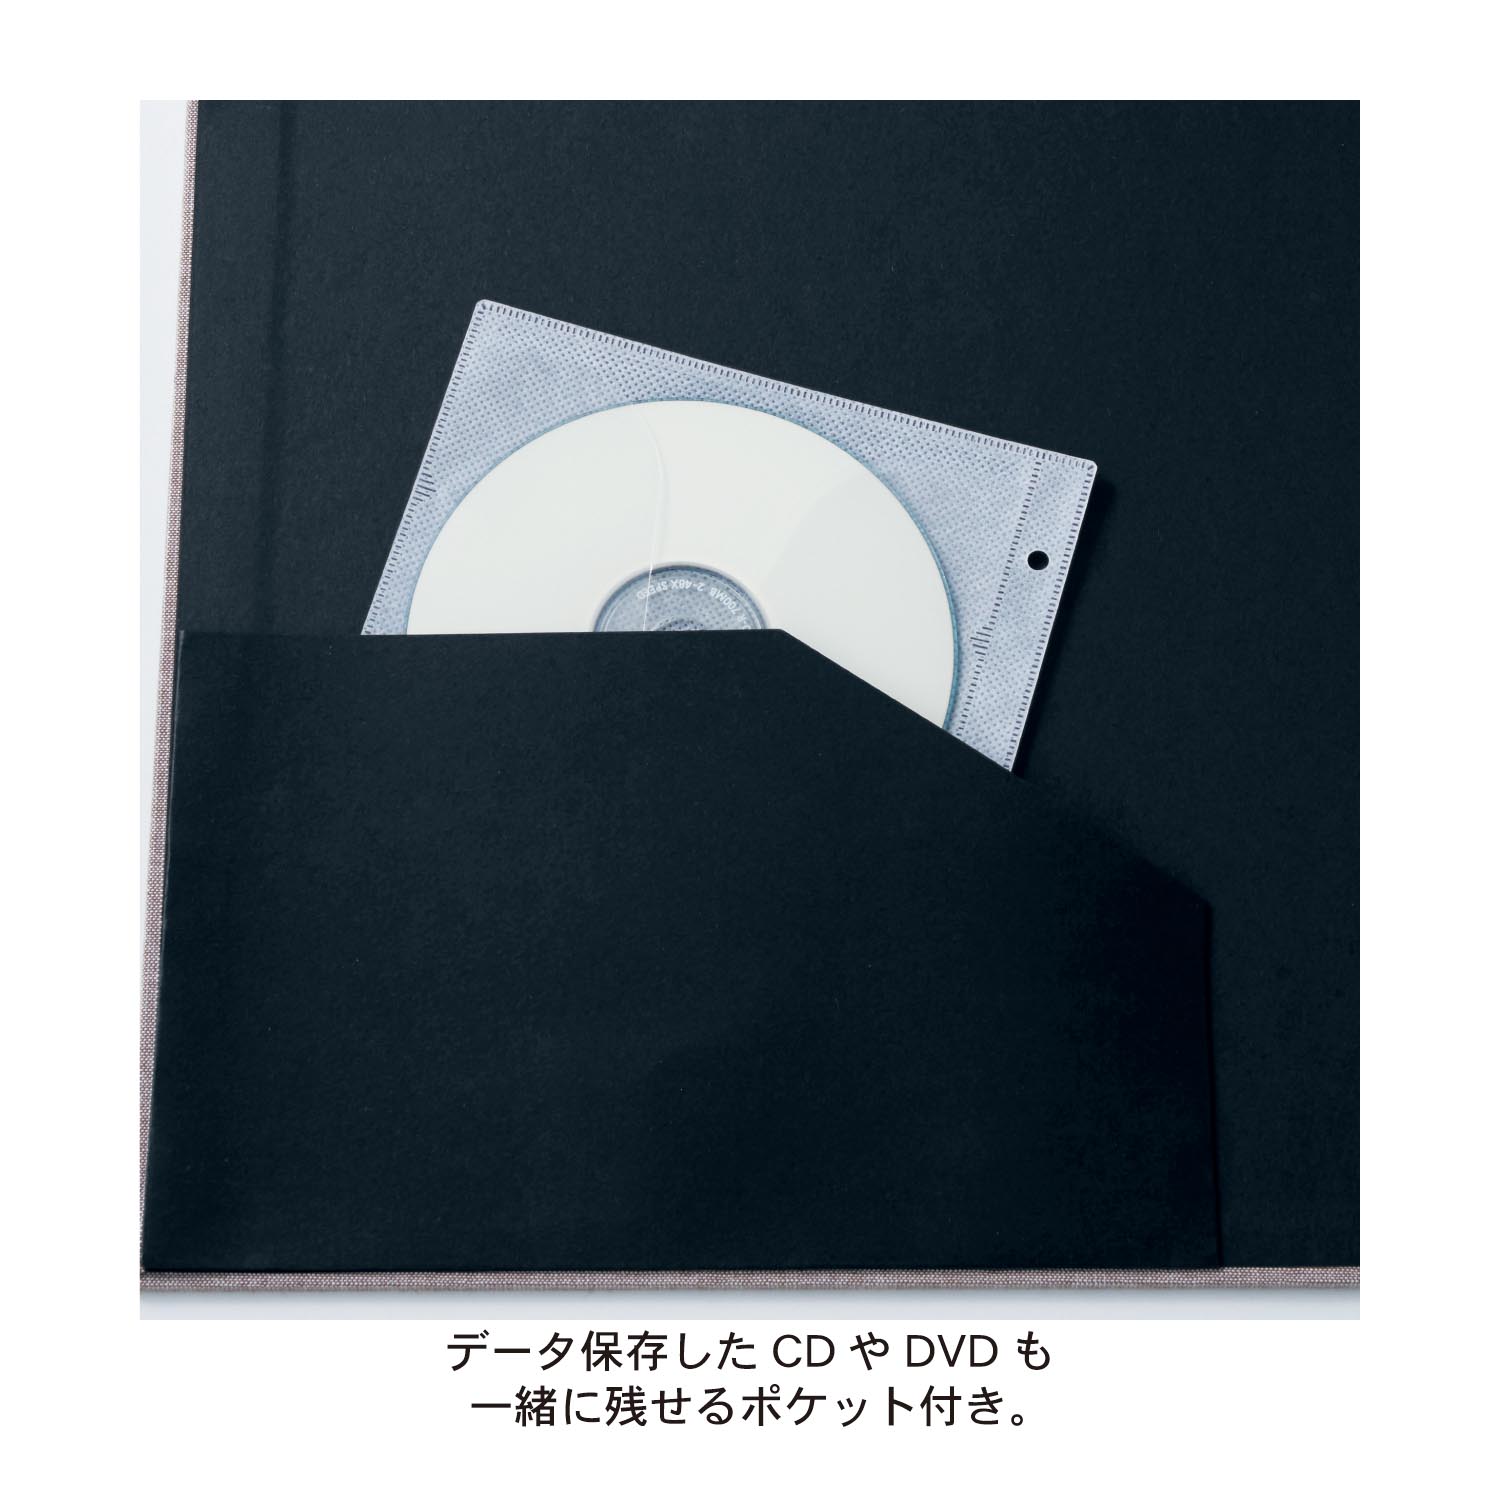 すっきり揃う。生地張り表紙の612枚収納アルバム(L判)（アルバム/CD